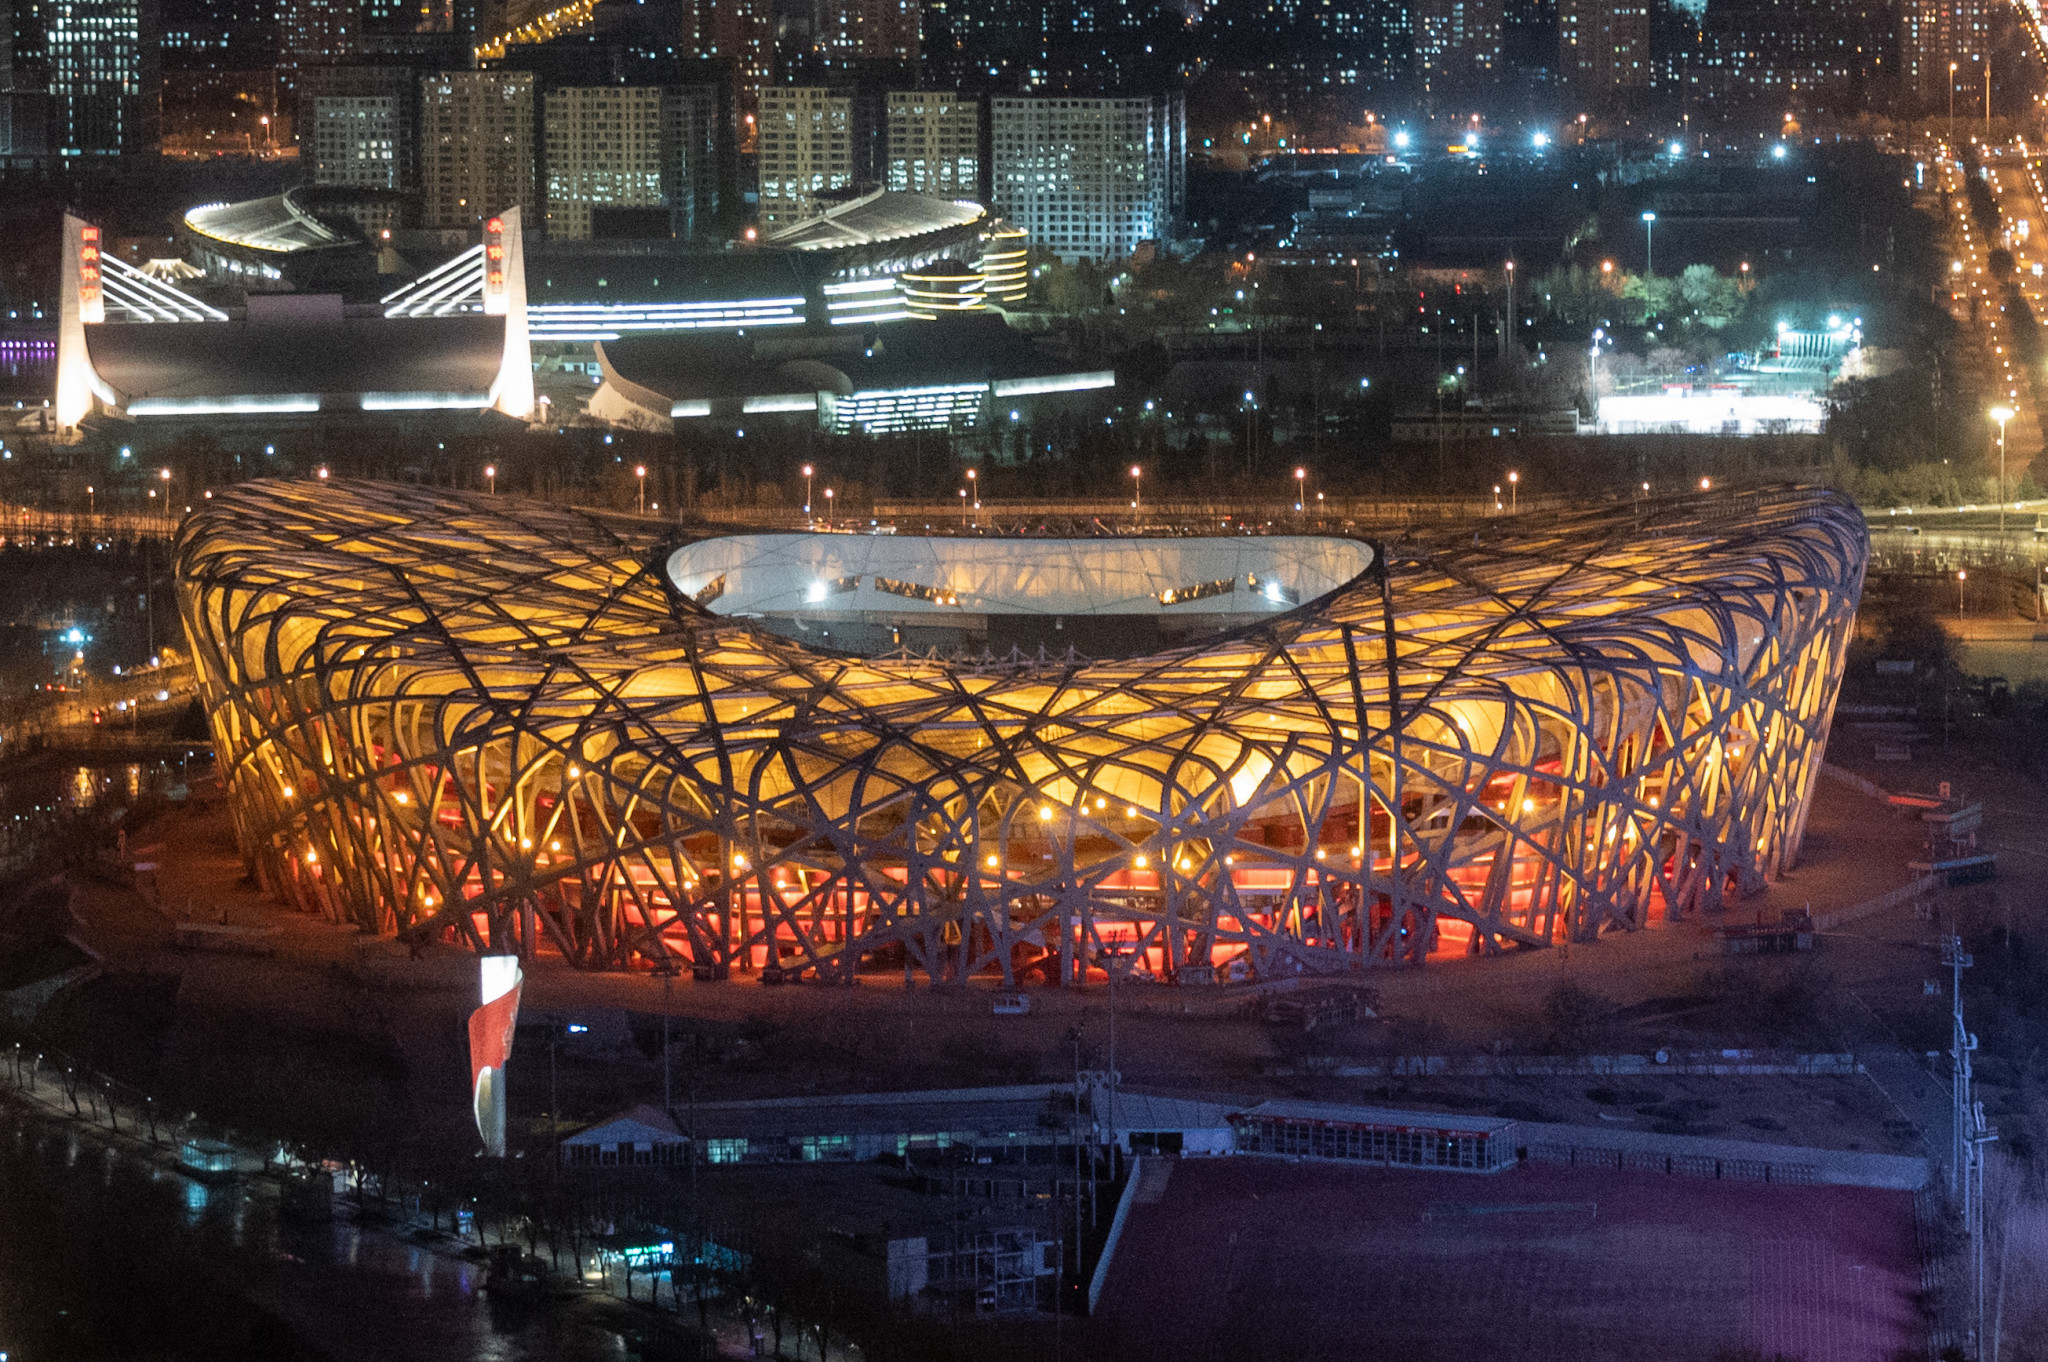 Beijing 2022 opening ceremony